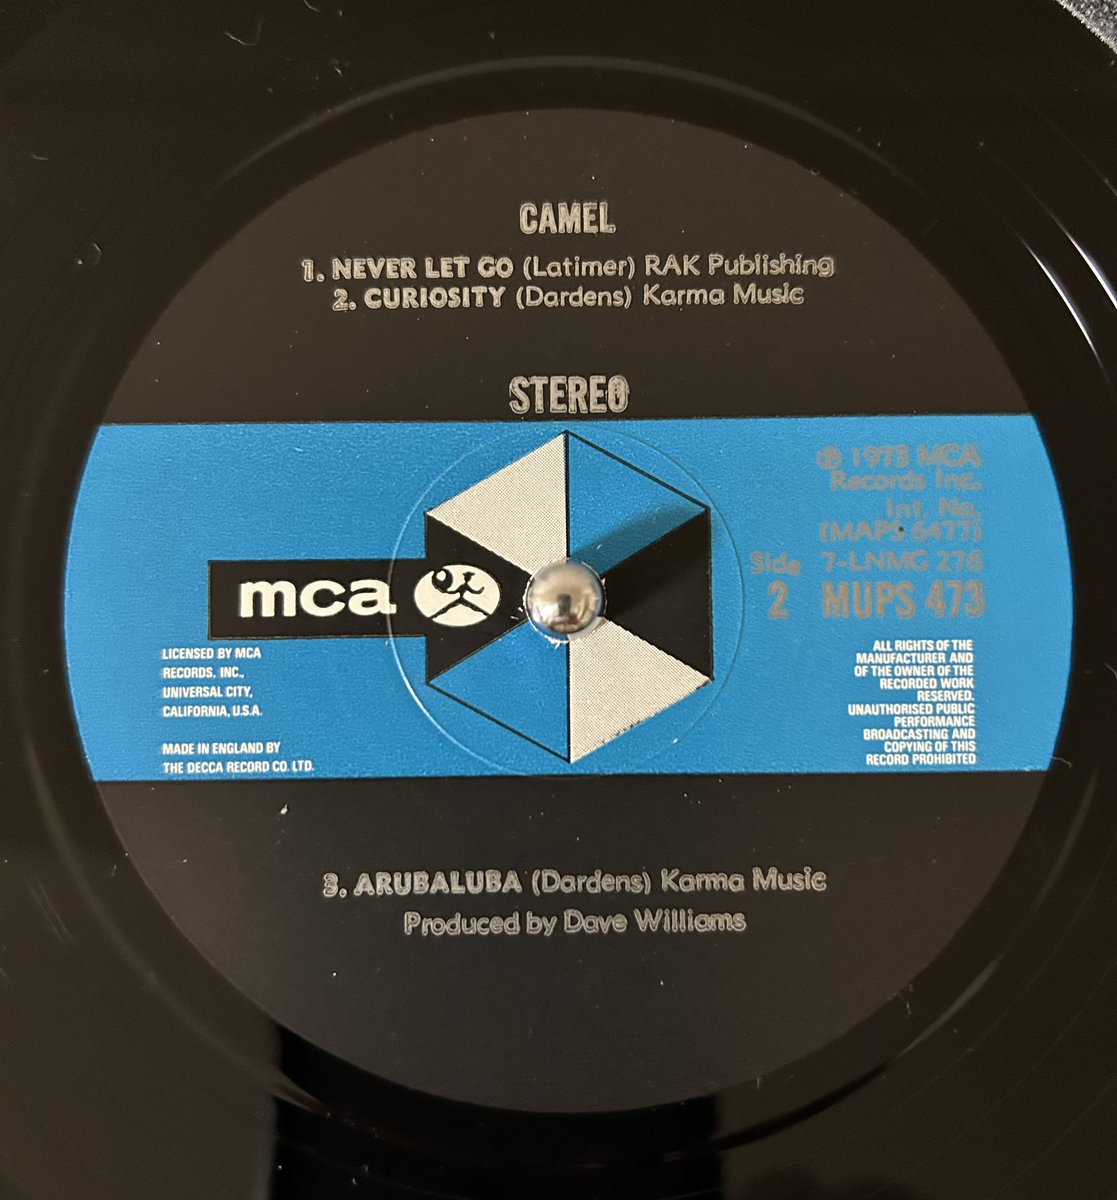 CAMEL / Camel (1973) MCA MUPS 473

7-LNMG-275-2L 1 I  JT
7-LNMG-276-1L 1 C  JT

2月28日リリース記念日！

デビュー作は色々と模索中だけどB1は既にCAMEL節が

Peter Bardensの色が結構濃いアルバムだよね〜彼の初期ソロの延長線みたいな感じで

ラベル両面ともBardensの綴り間違えてます